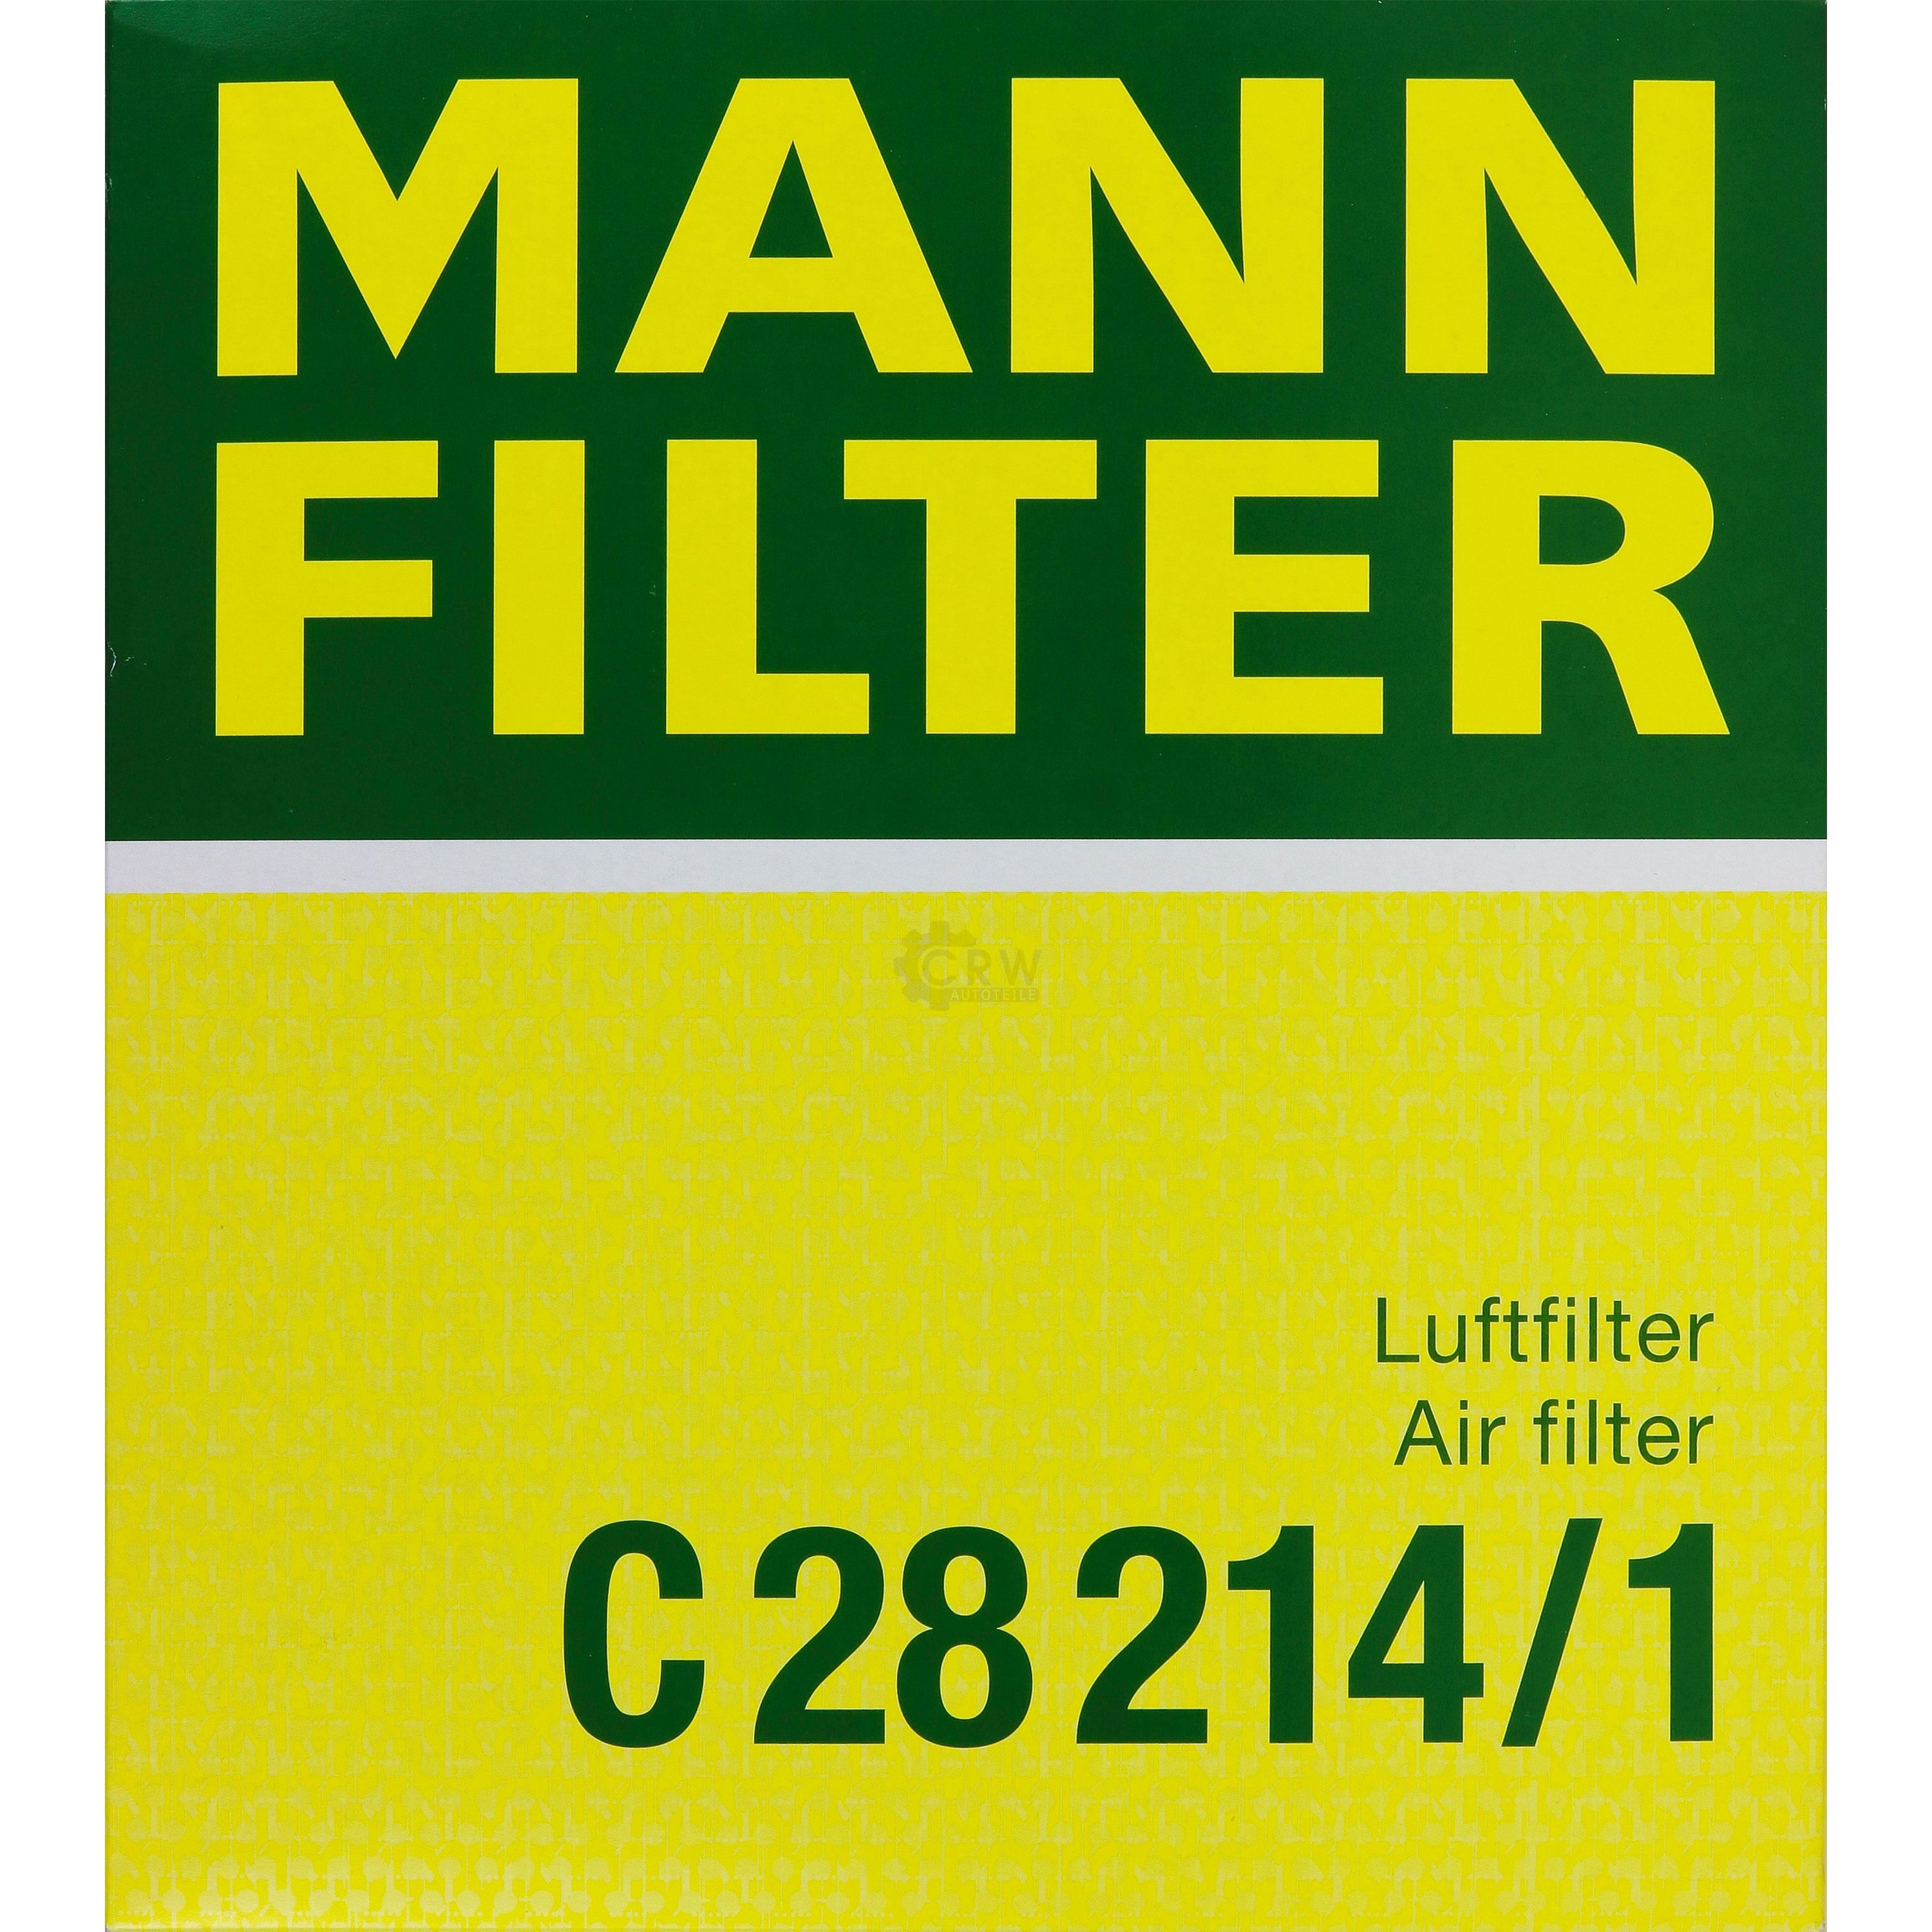 MANN-FILTER Luftfilter für Audi A8 4D2 4D8 4.2 quattro S8 A6 Avant 4A C4 S6